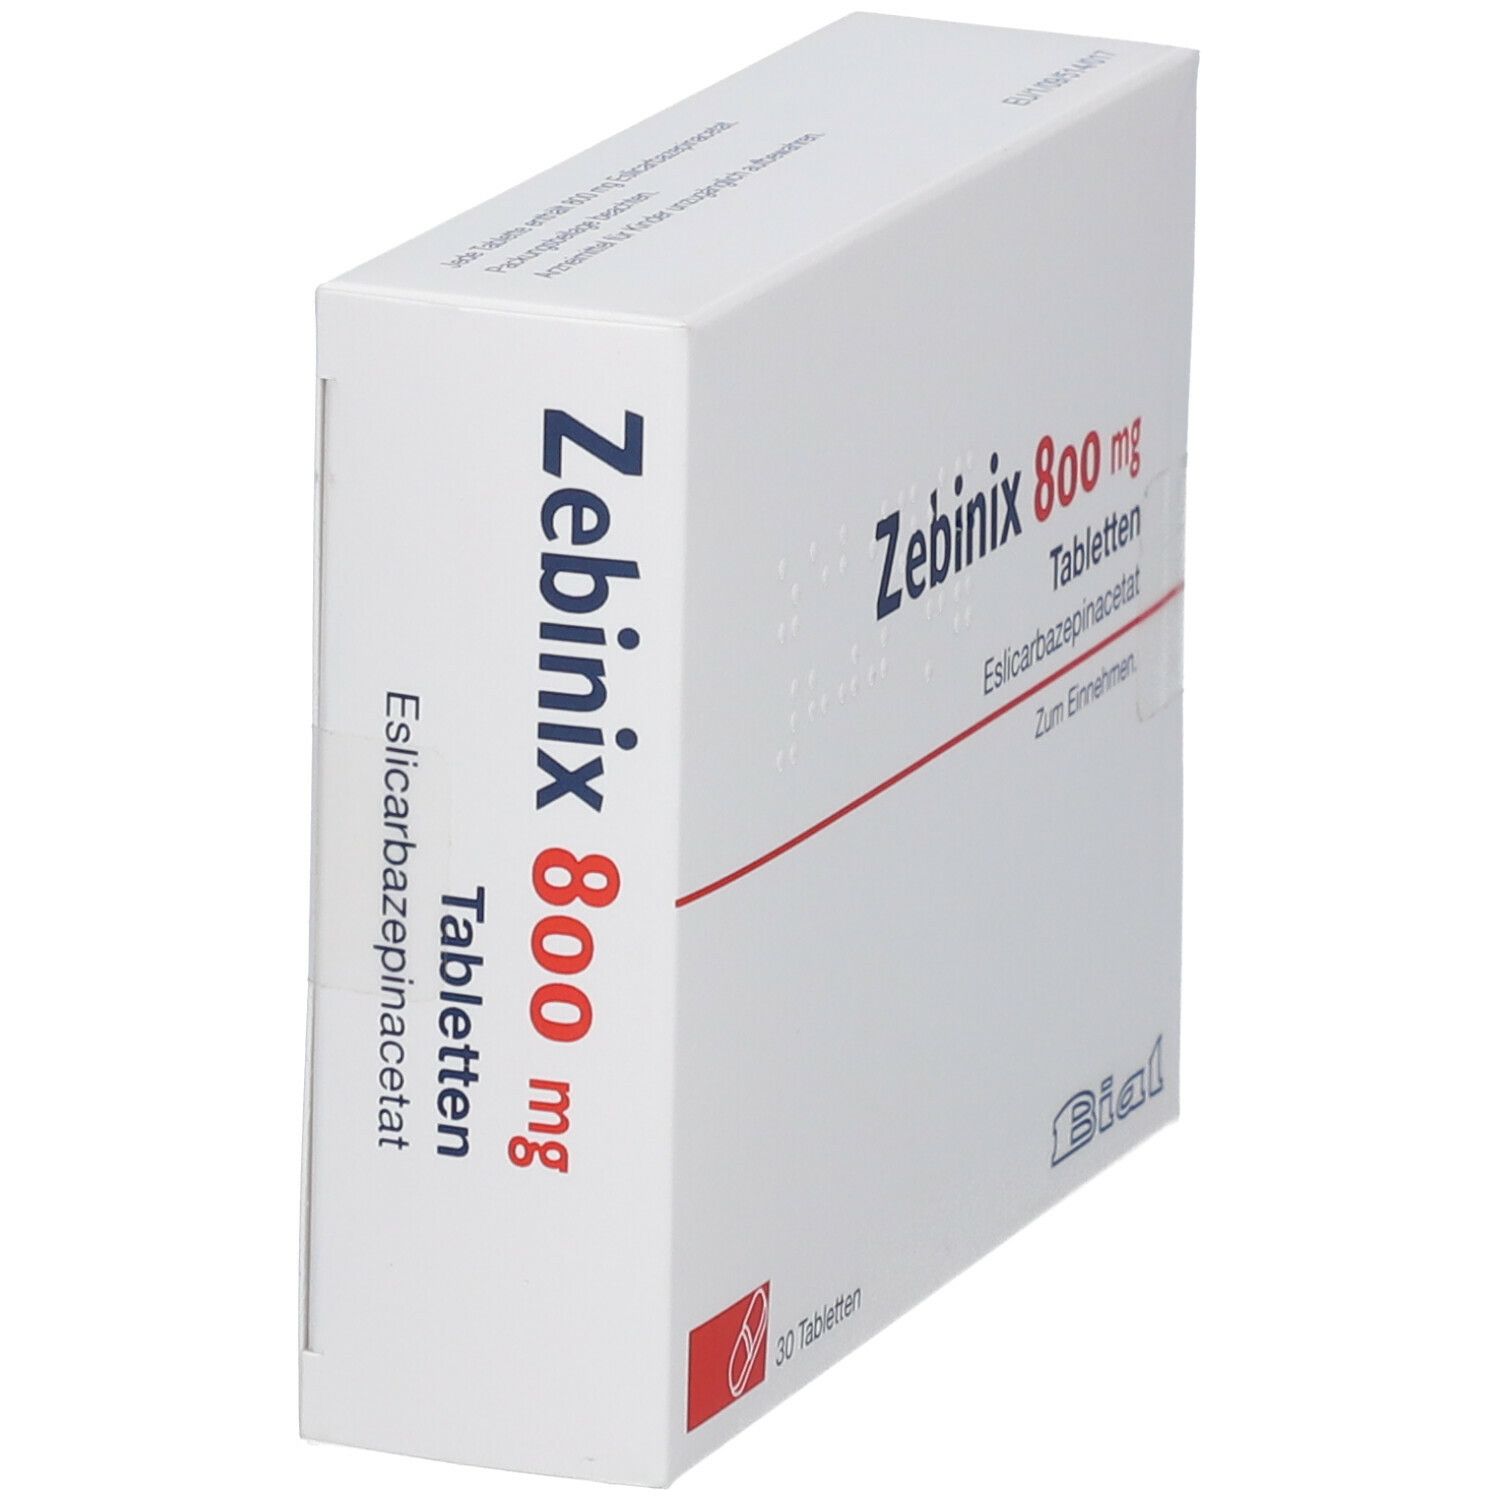 Zebinix 800 mg